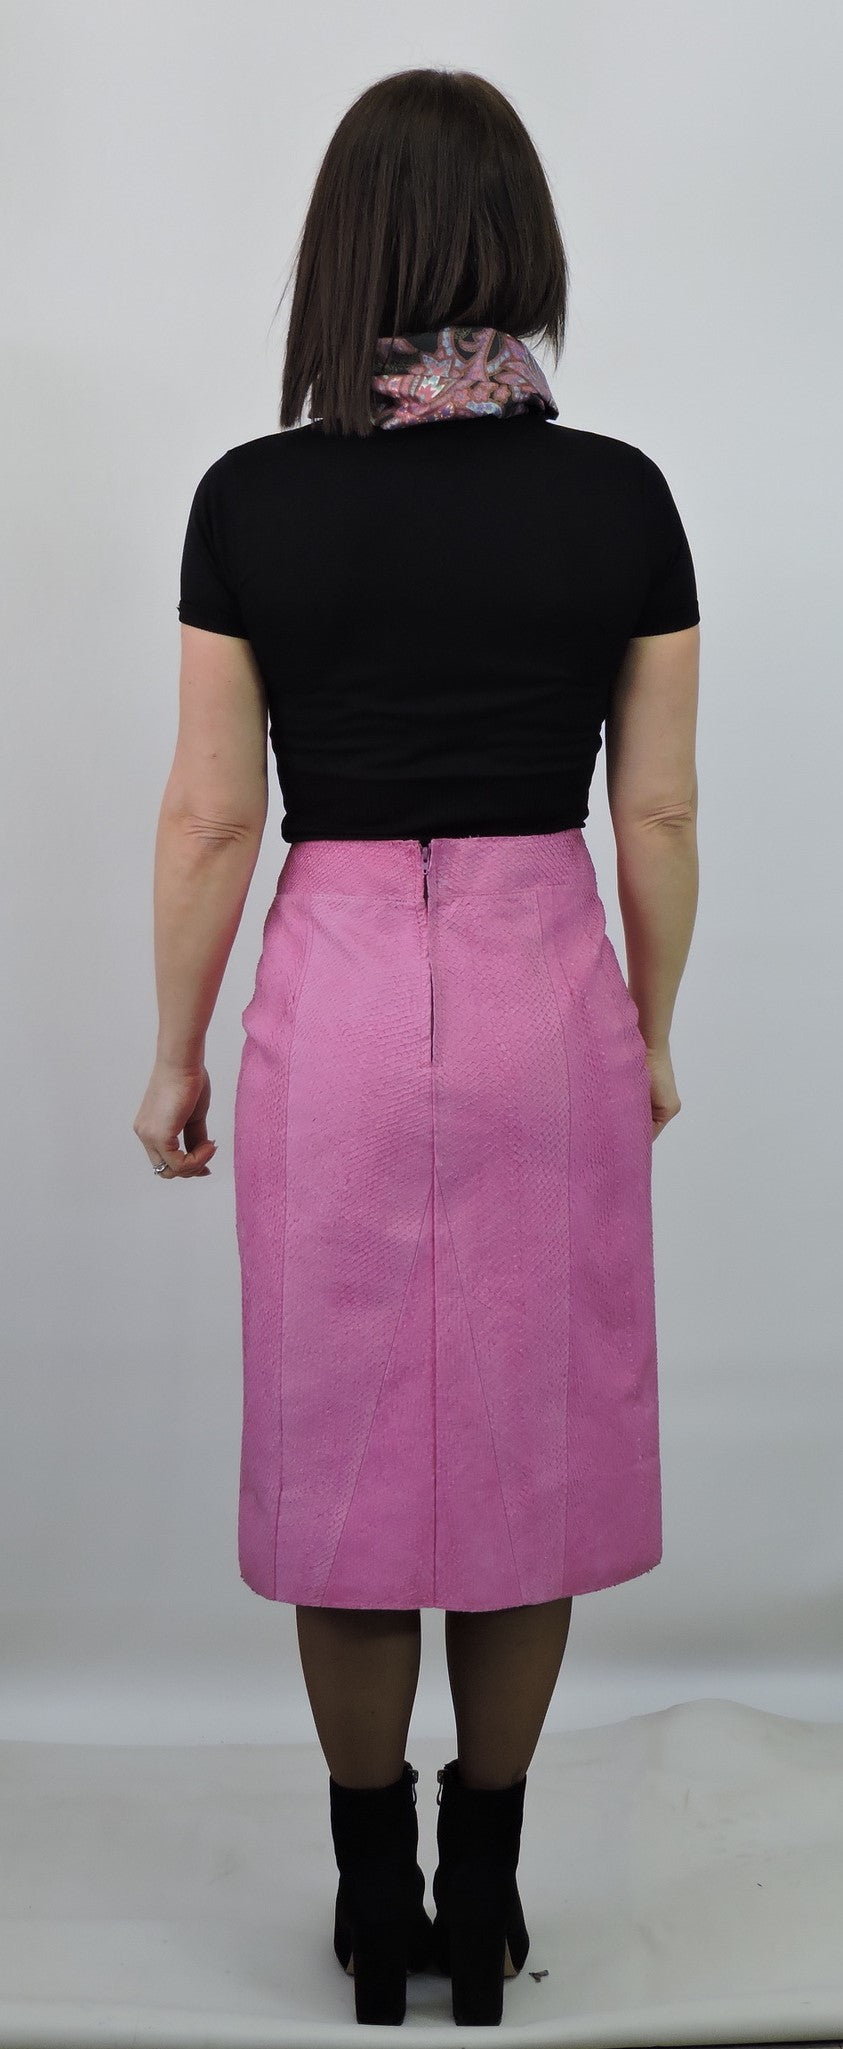 24 inch long skirt